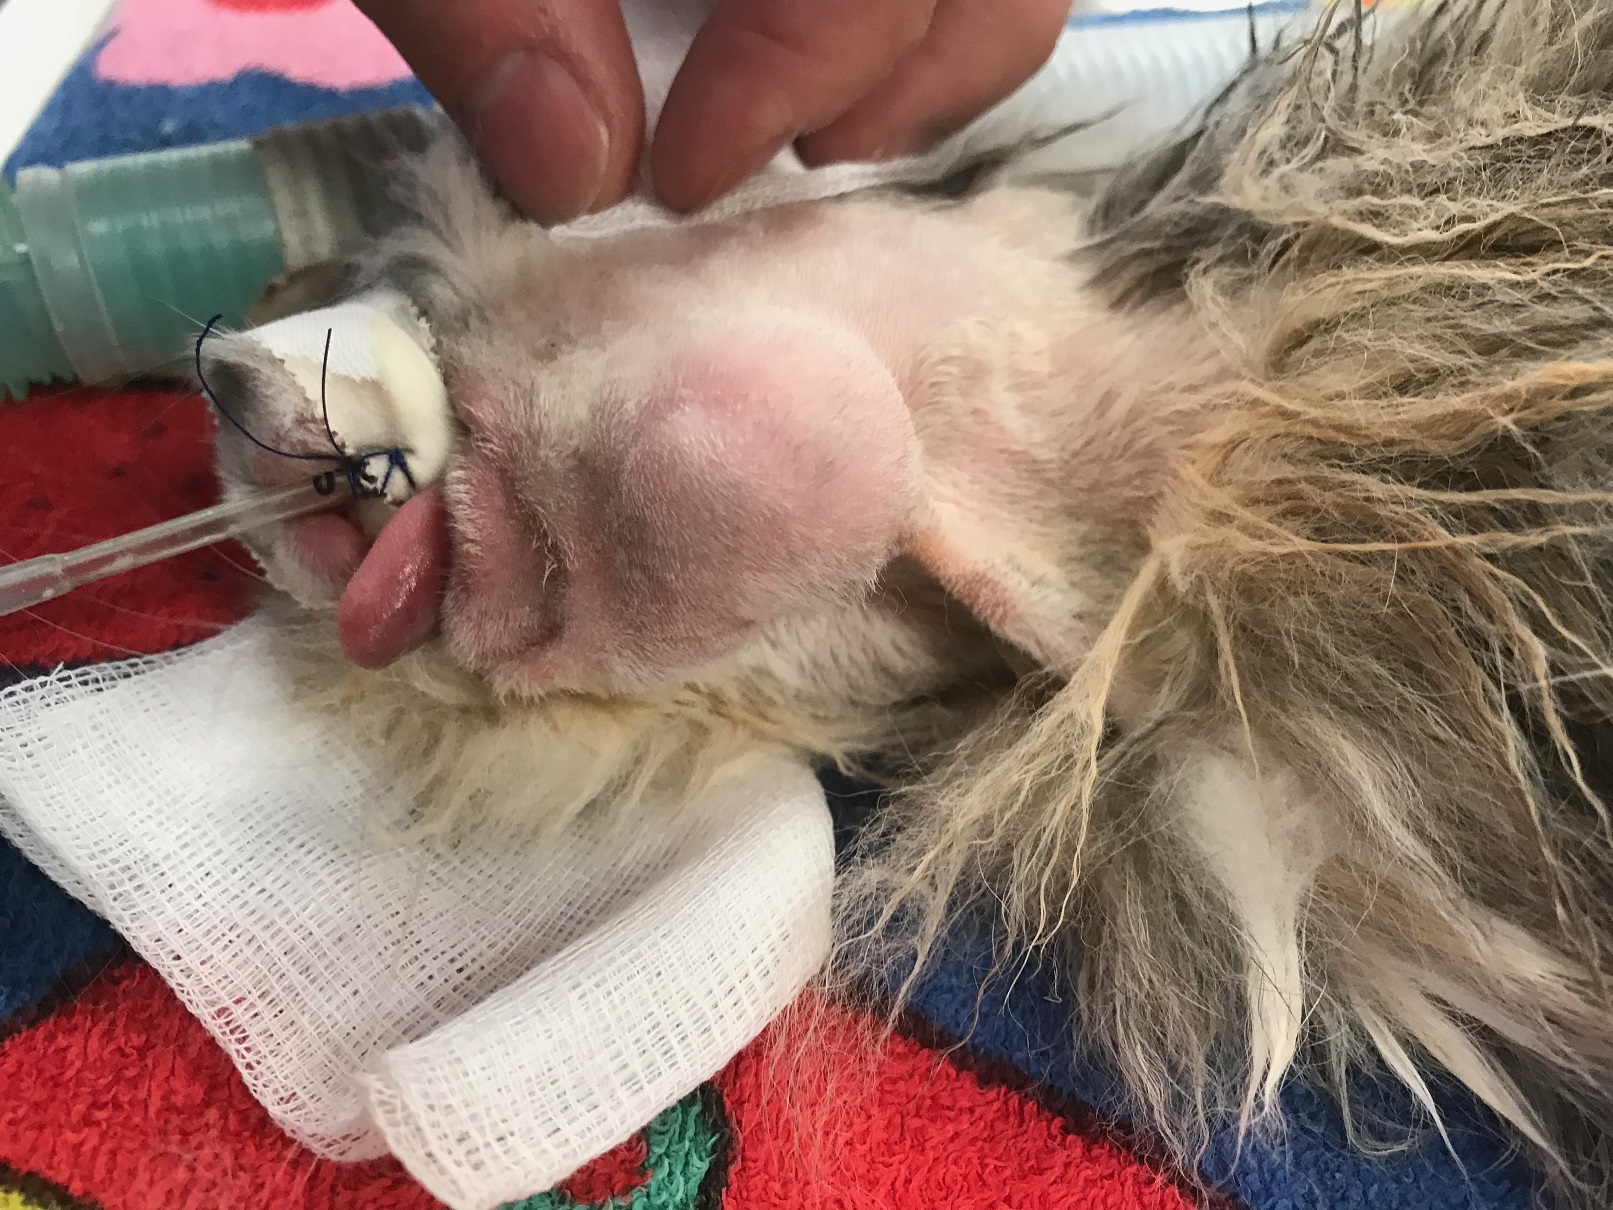 Gestion médico-chirurgicale d'un abcès de la face chez un lapin